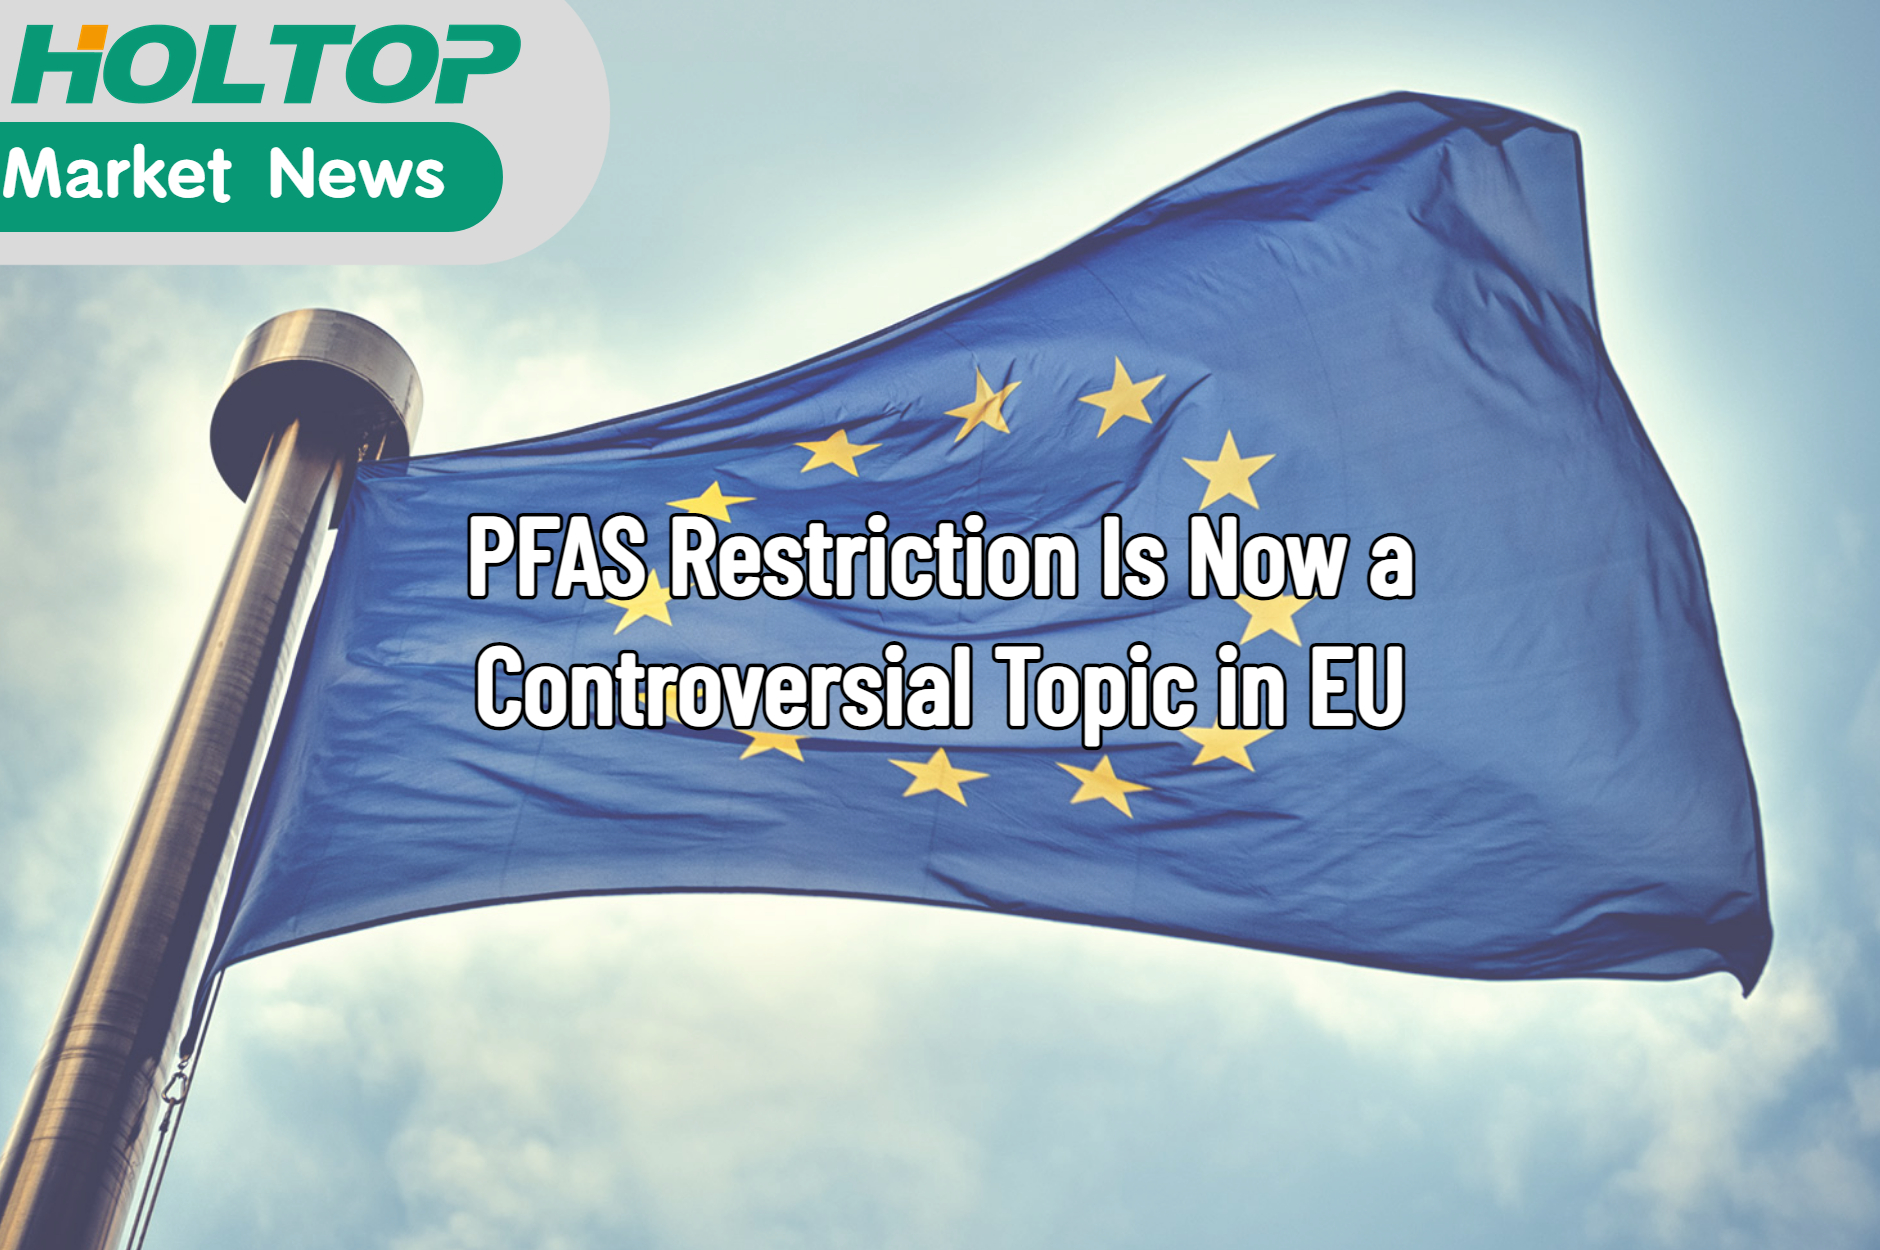 Omezení PFAS je nyní v EU kontroverzním tématem